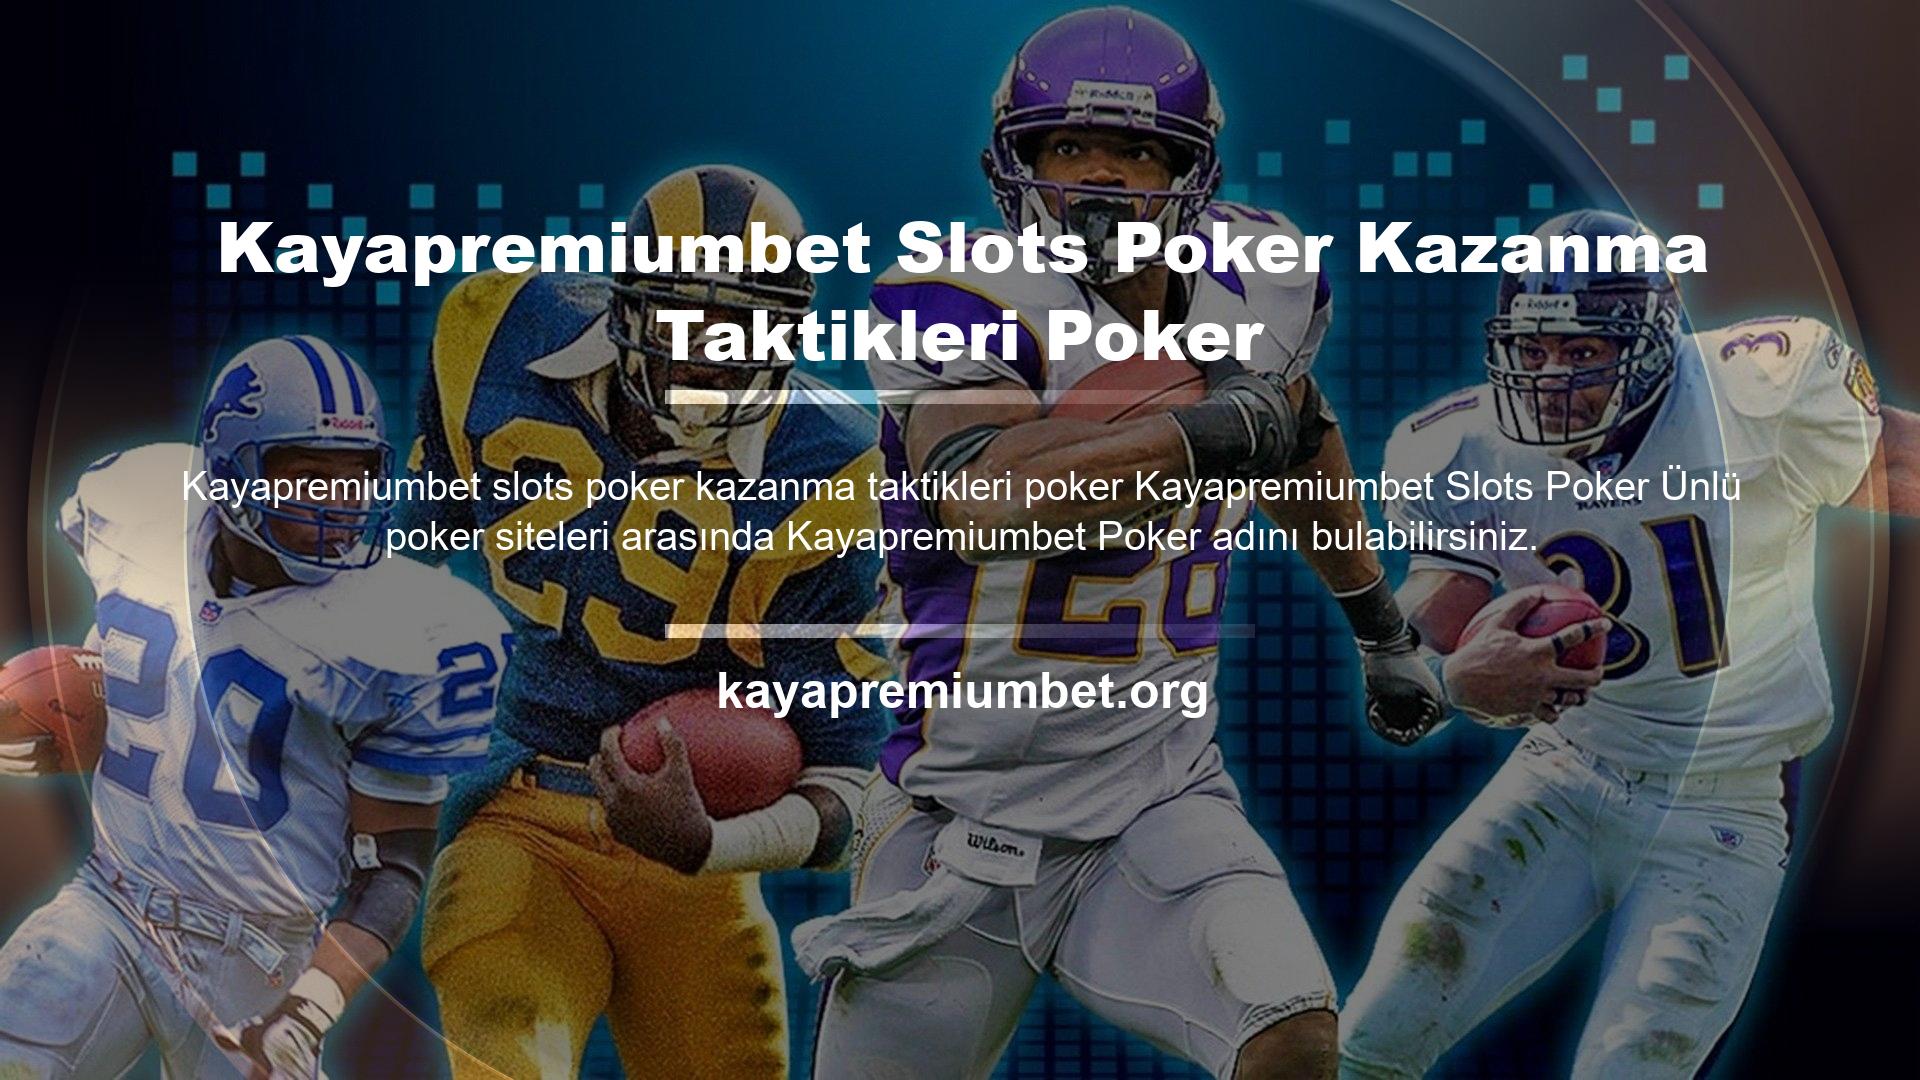 Bu web sitesi müşterilerine hem poker hem de casino alanlarında birçok hizmet sunmaktadır